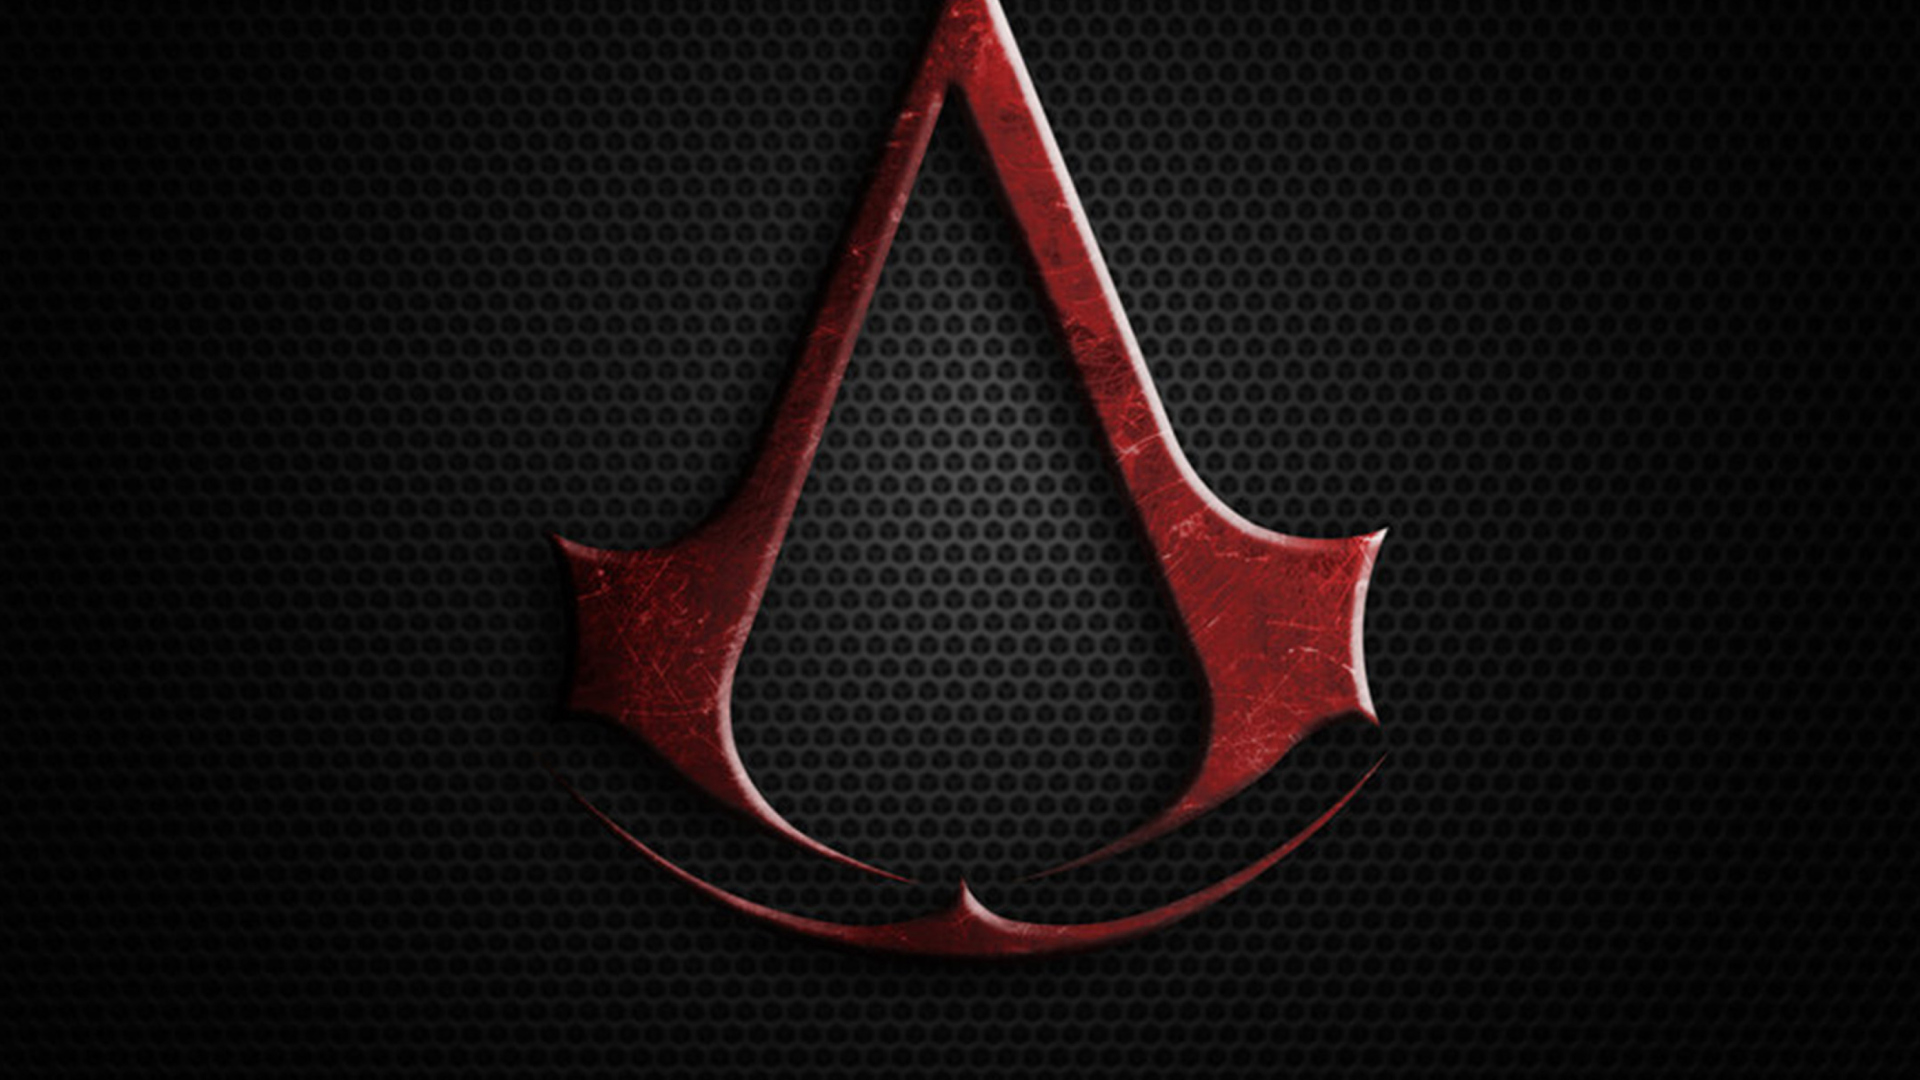 Sfondi Assassins Creed 1920x1080